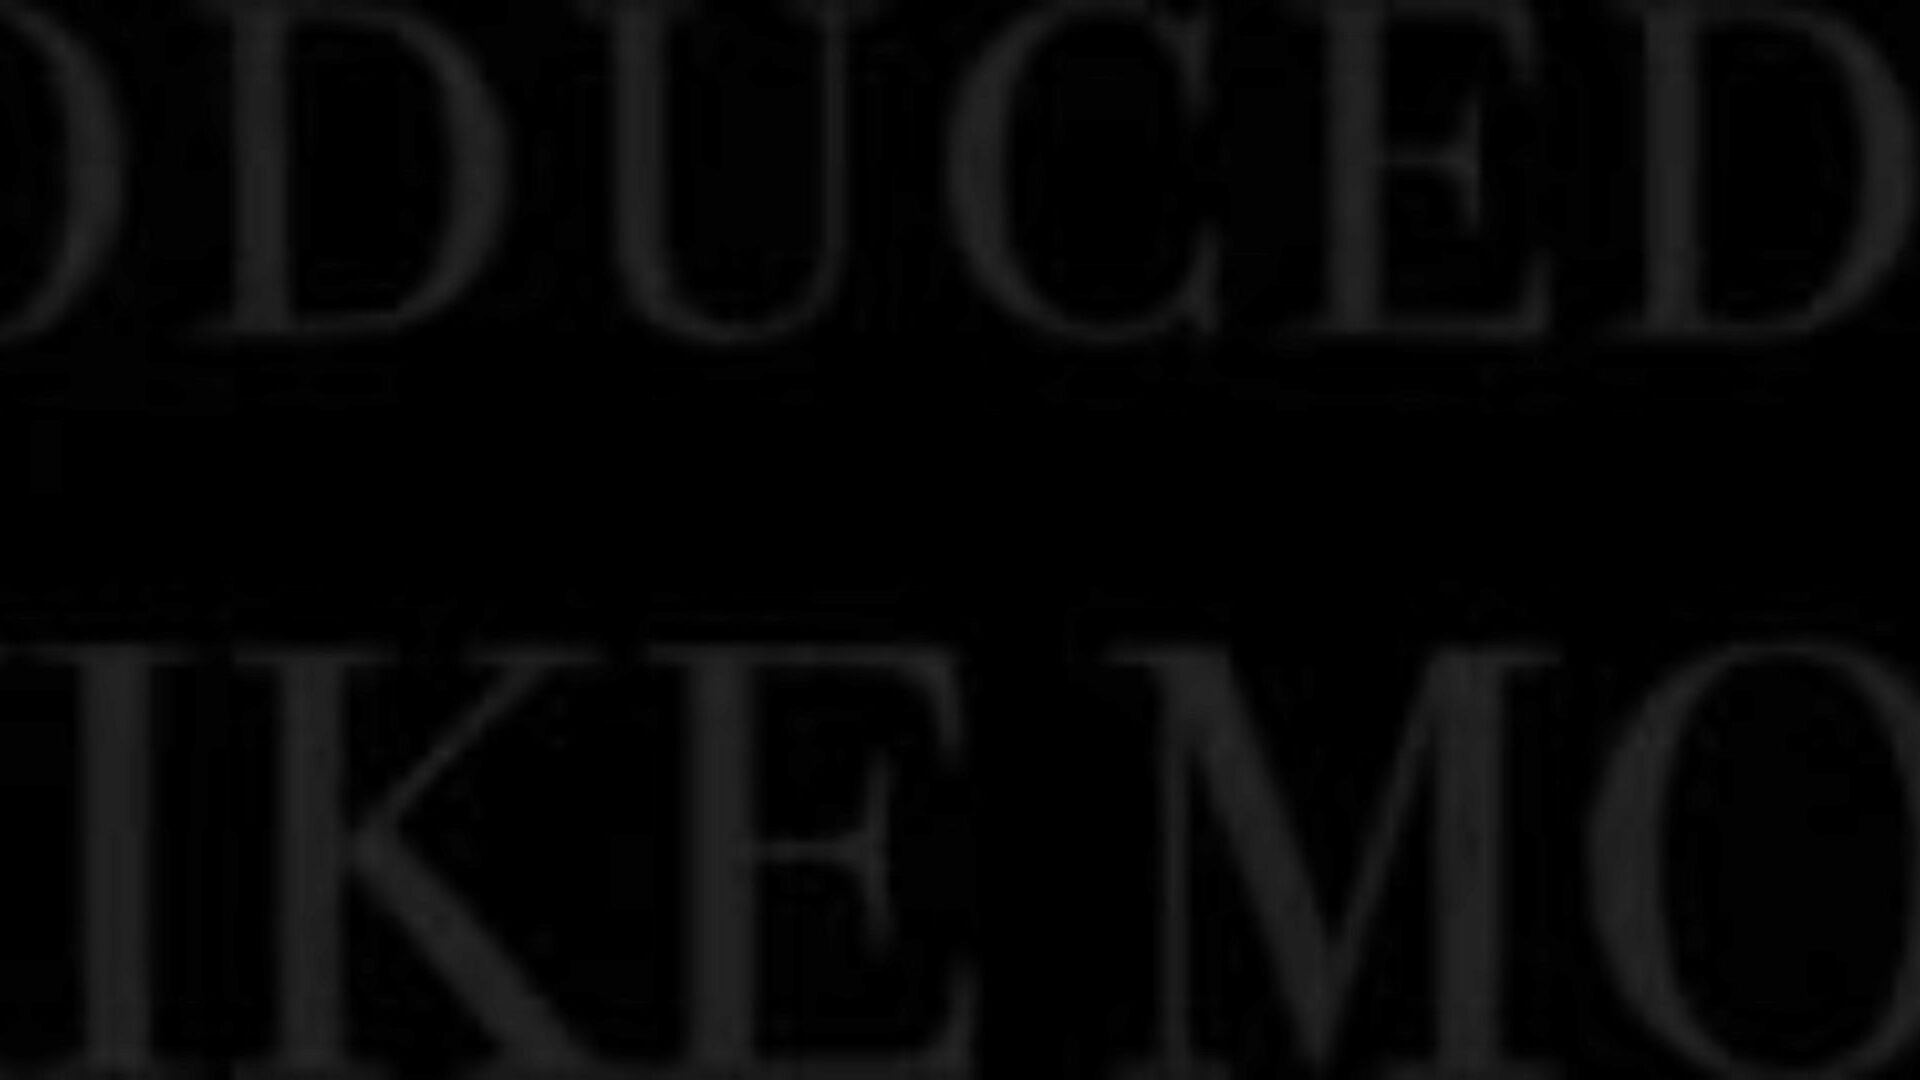 блацкедрав Алекис дели огроман ББЦ свог бф са бестие сатом Блацкедрав Алекис дели огроман ББЦ свог БФ са Бестие Јилл видео на кхамстер - ултимативној колекцији бесплатног ББЦ списка и чуваним епизодама хд порнографије тубе